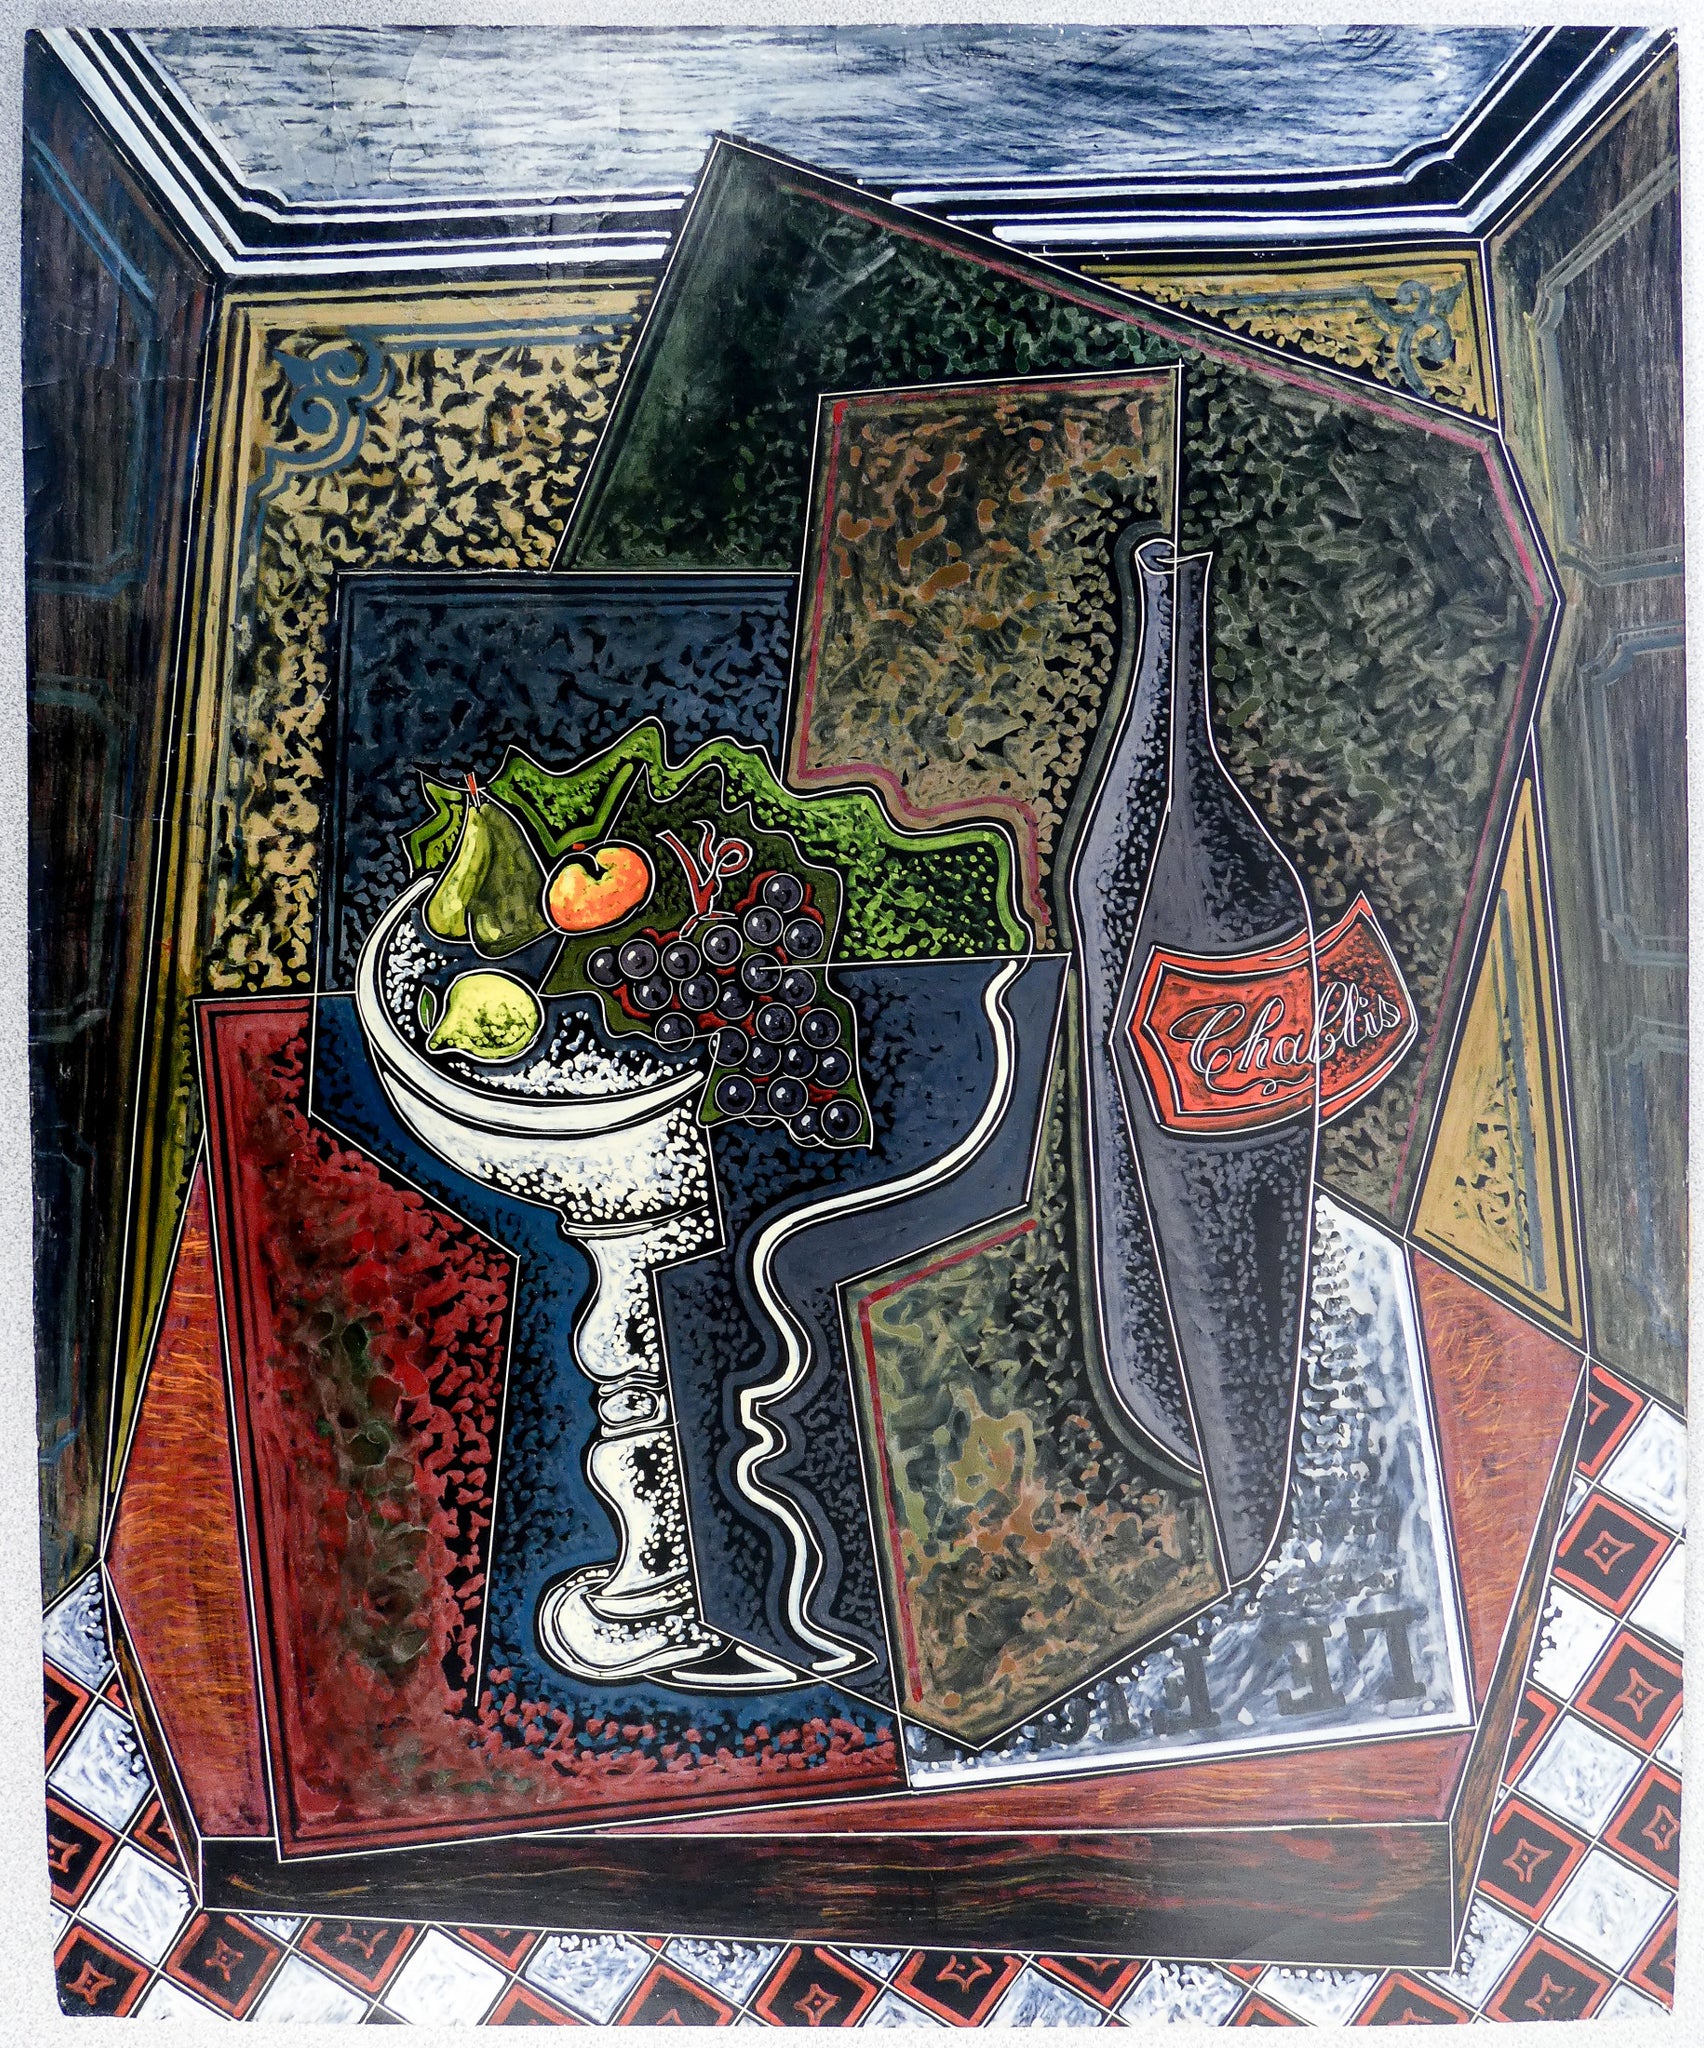 quadro pippo oriani 1930 periodo parigino parigi dipinto encausto autentica